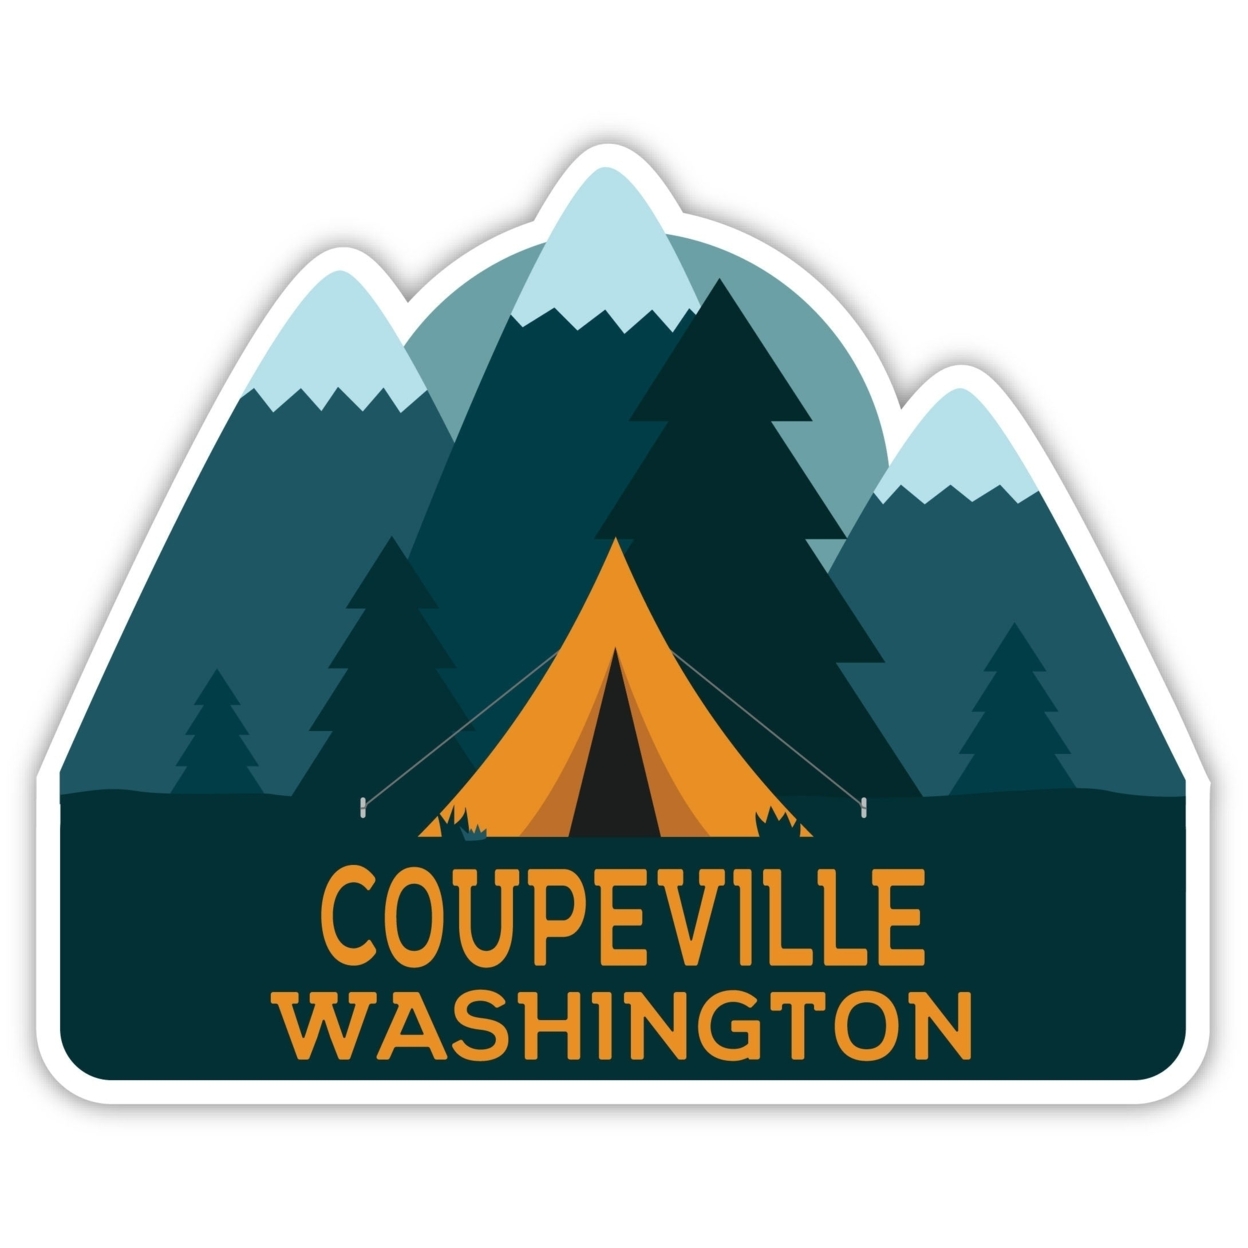 Coupeville Washington Souvenir Decorative Stickers (Choose Theme And Size) - Single Unit, 6-Inch, Tent